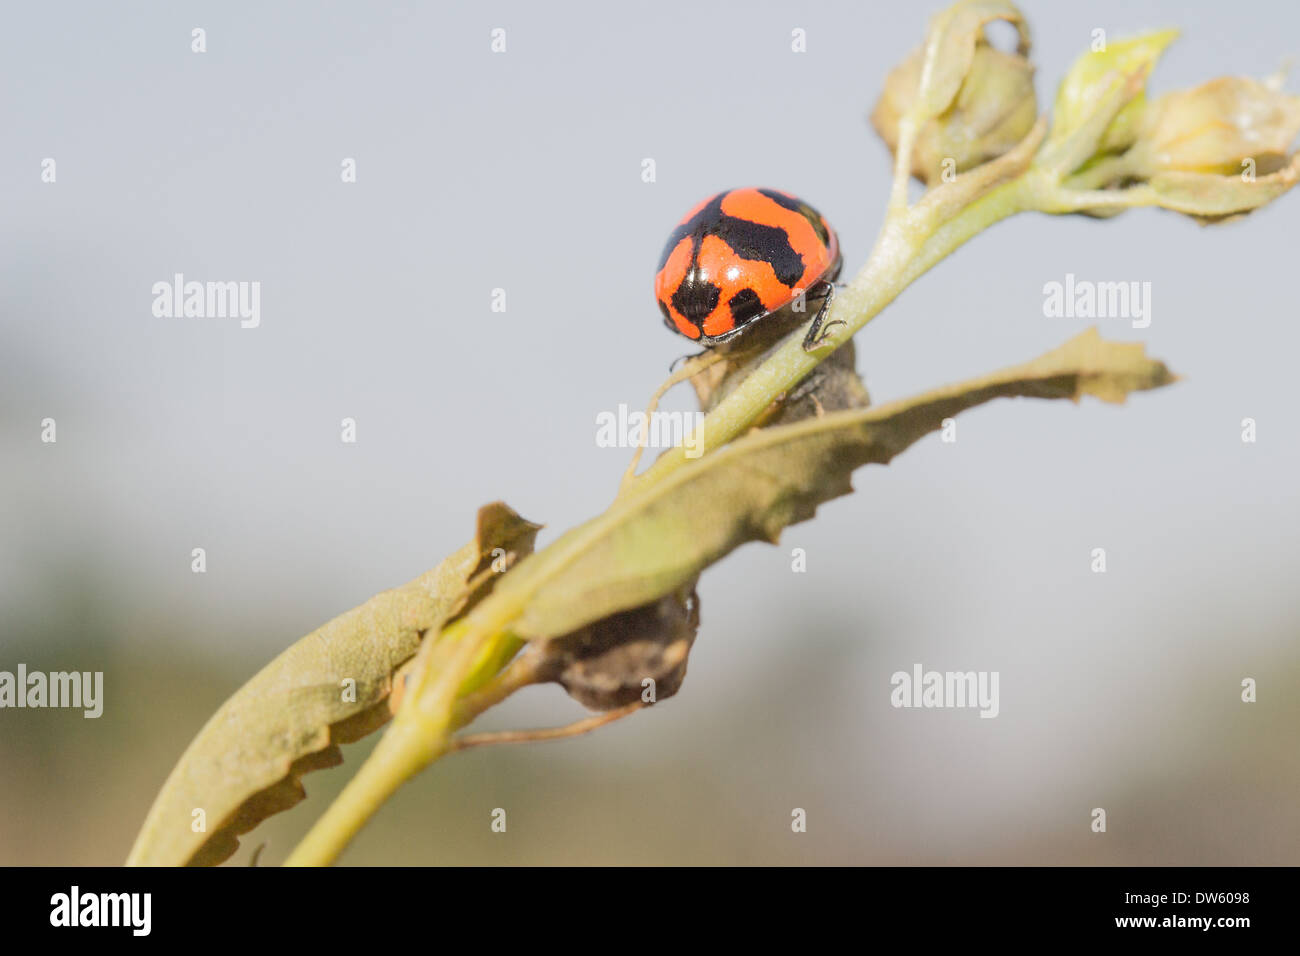 Diese Marienkäfer spielt verstecken und suchen mit mir, wenn ich diese Fotos dabei war. Stockfoto